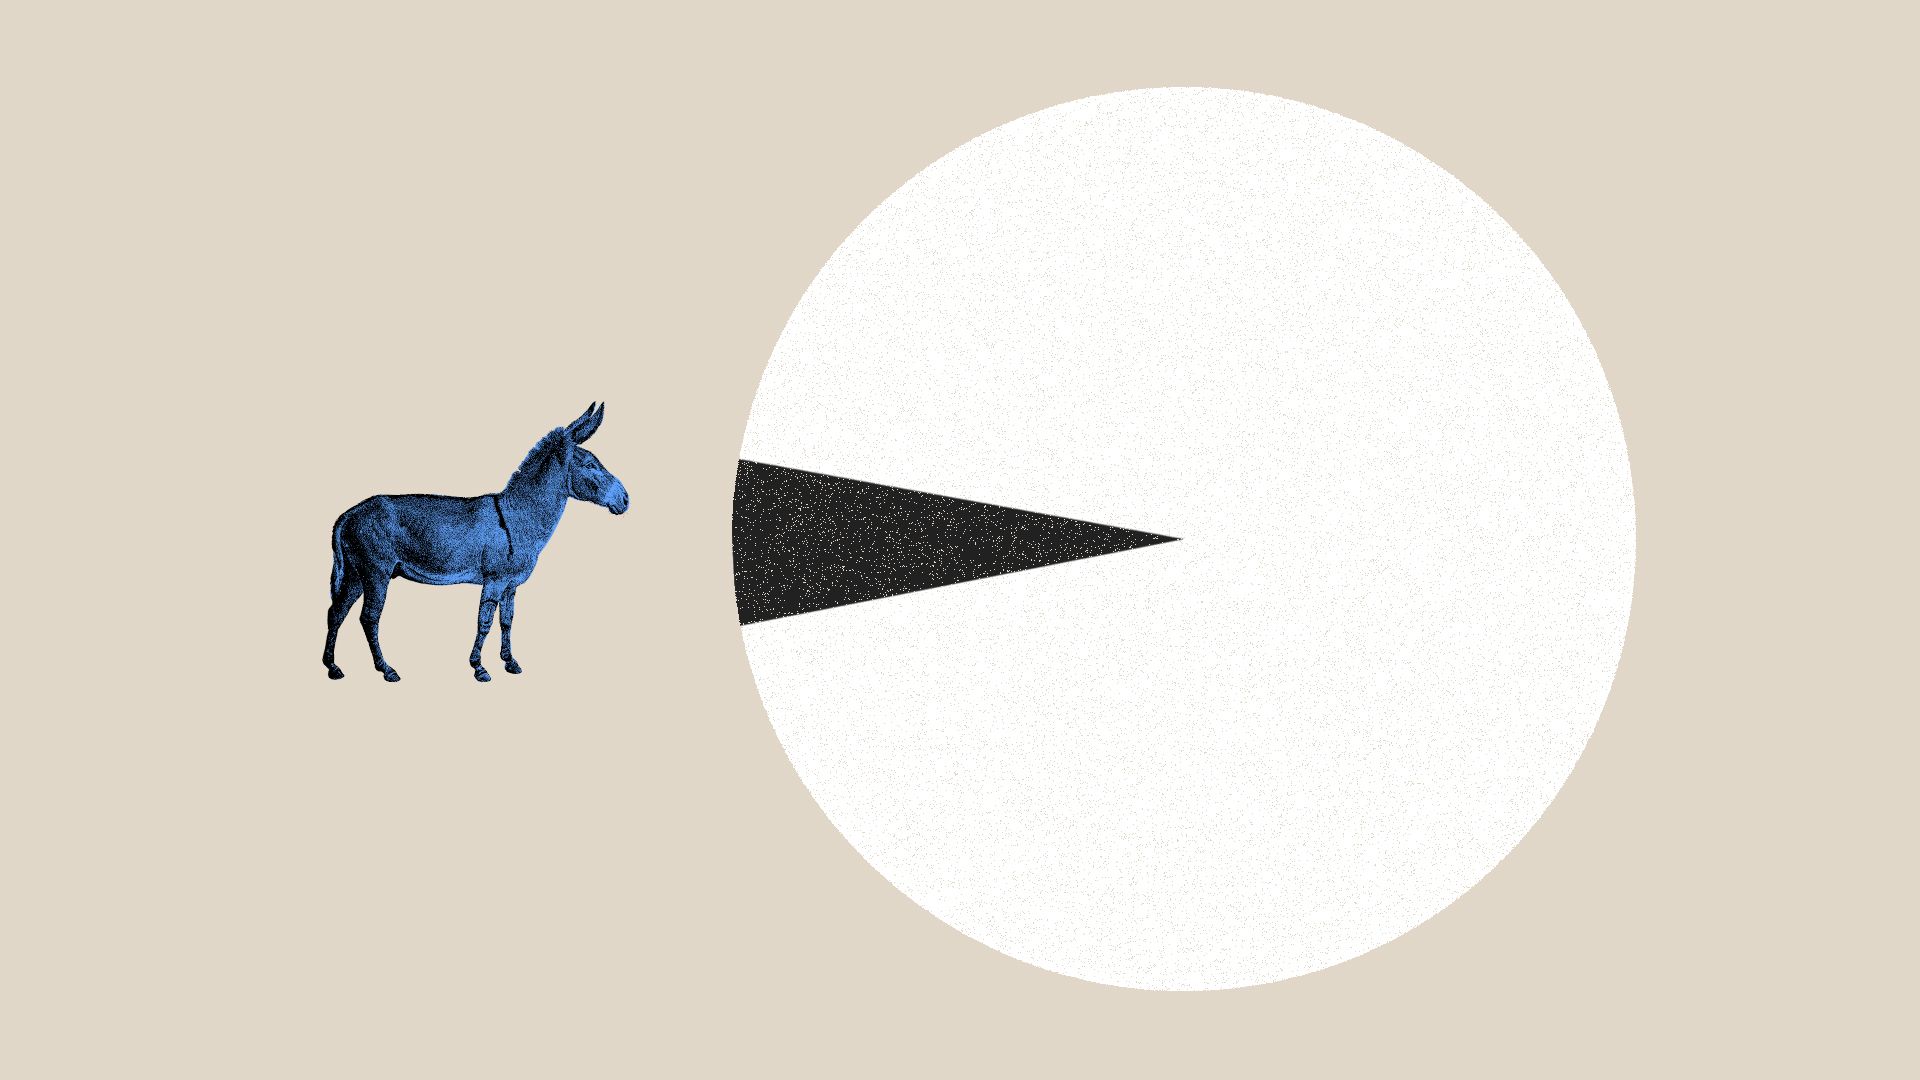 Illustration of donkey facing  large pie chart